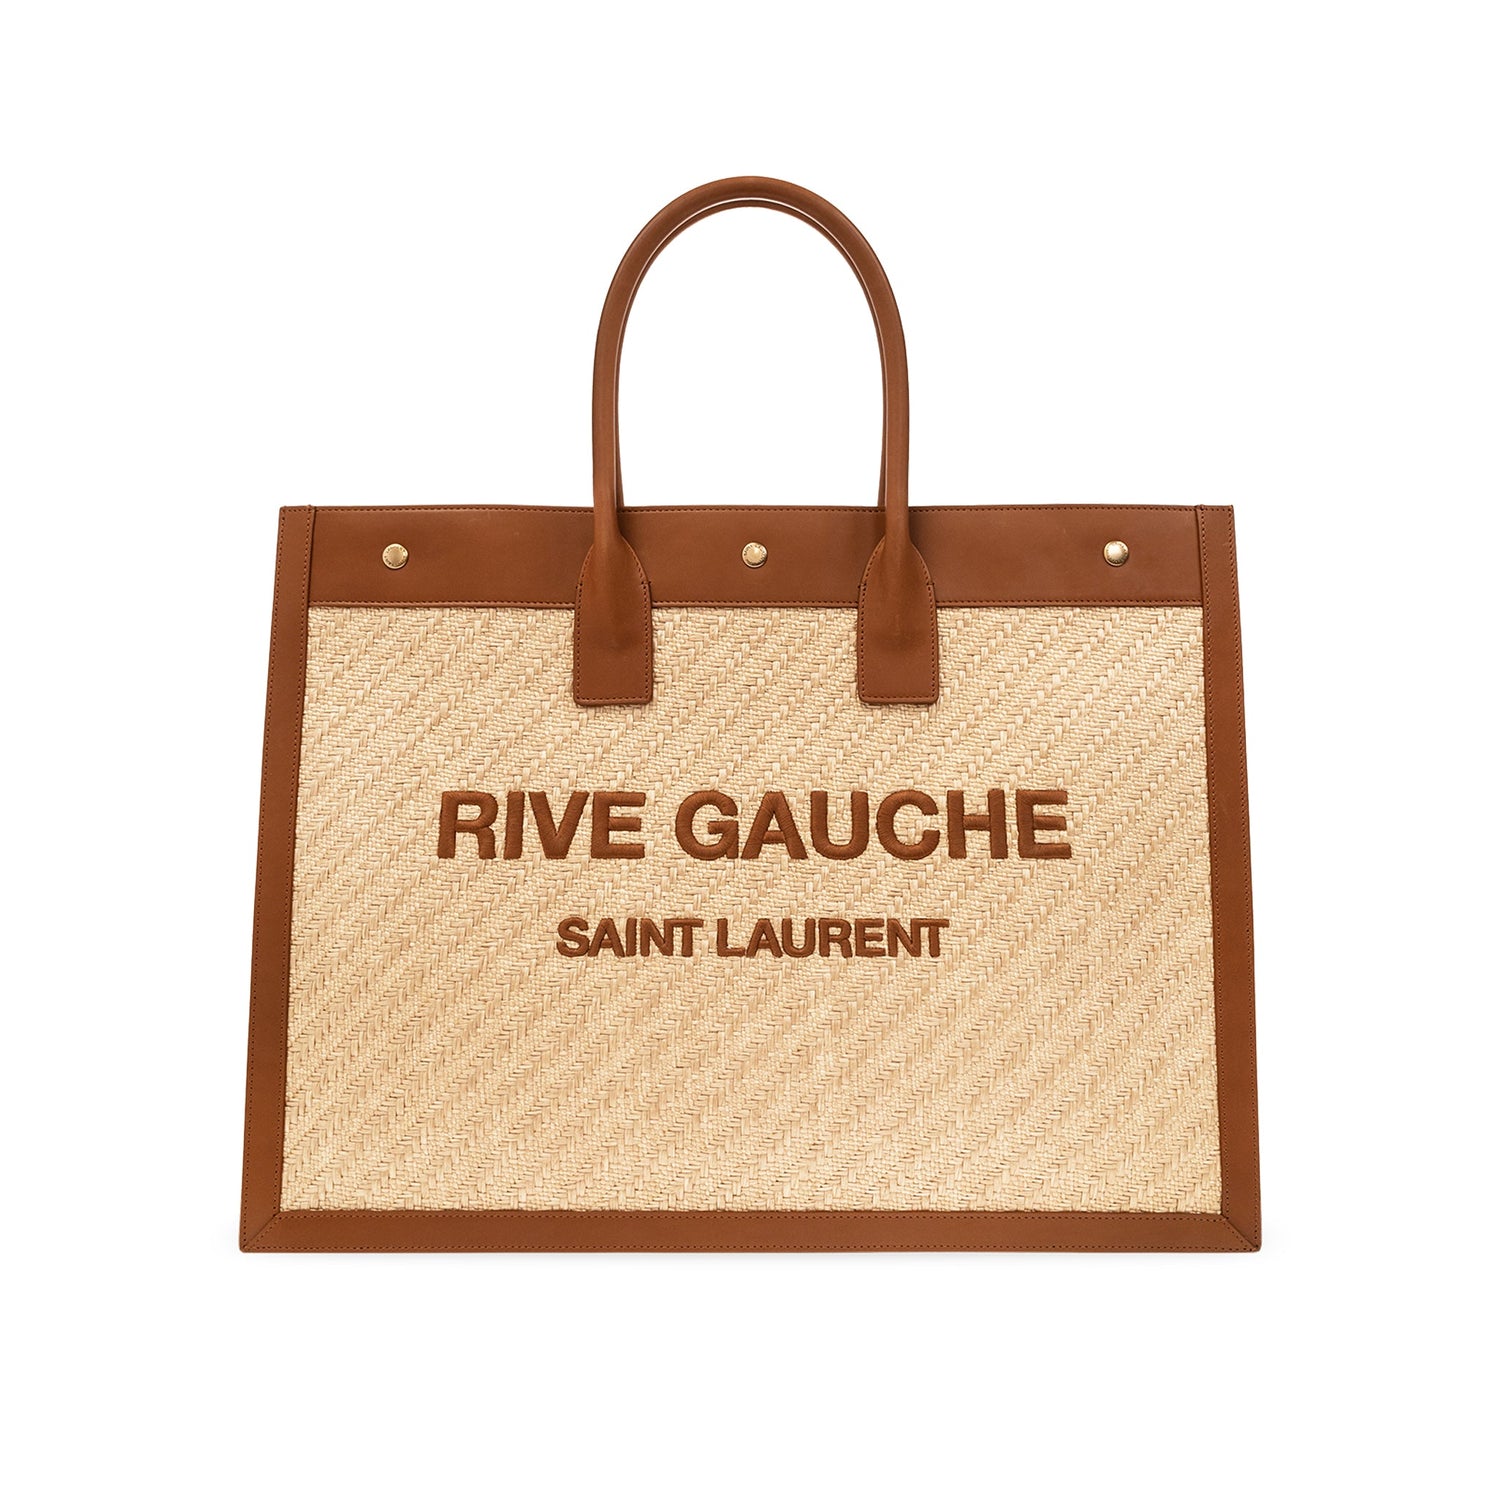 SAINT LAURENT RIVE GAUCHE TOTE REVIEW *best size!! 